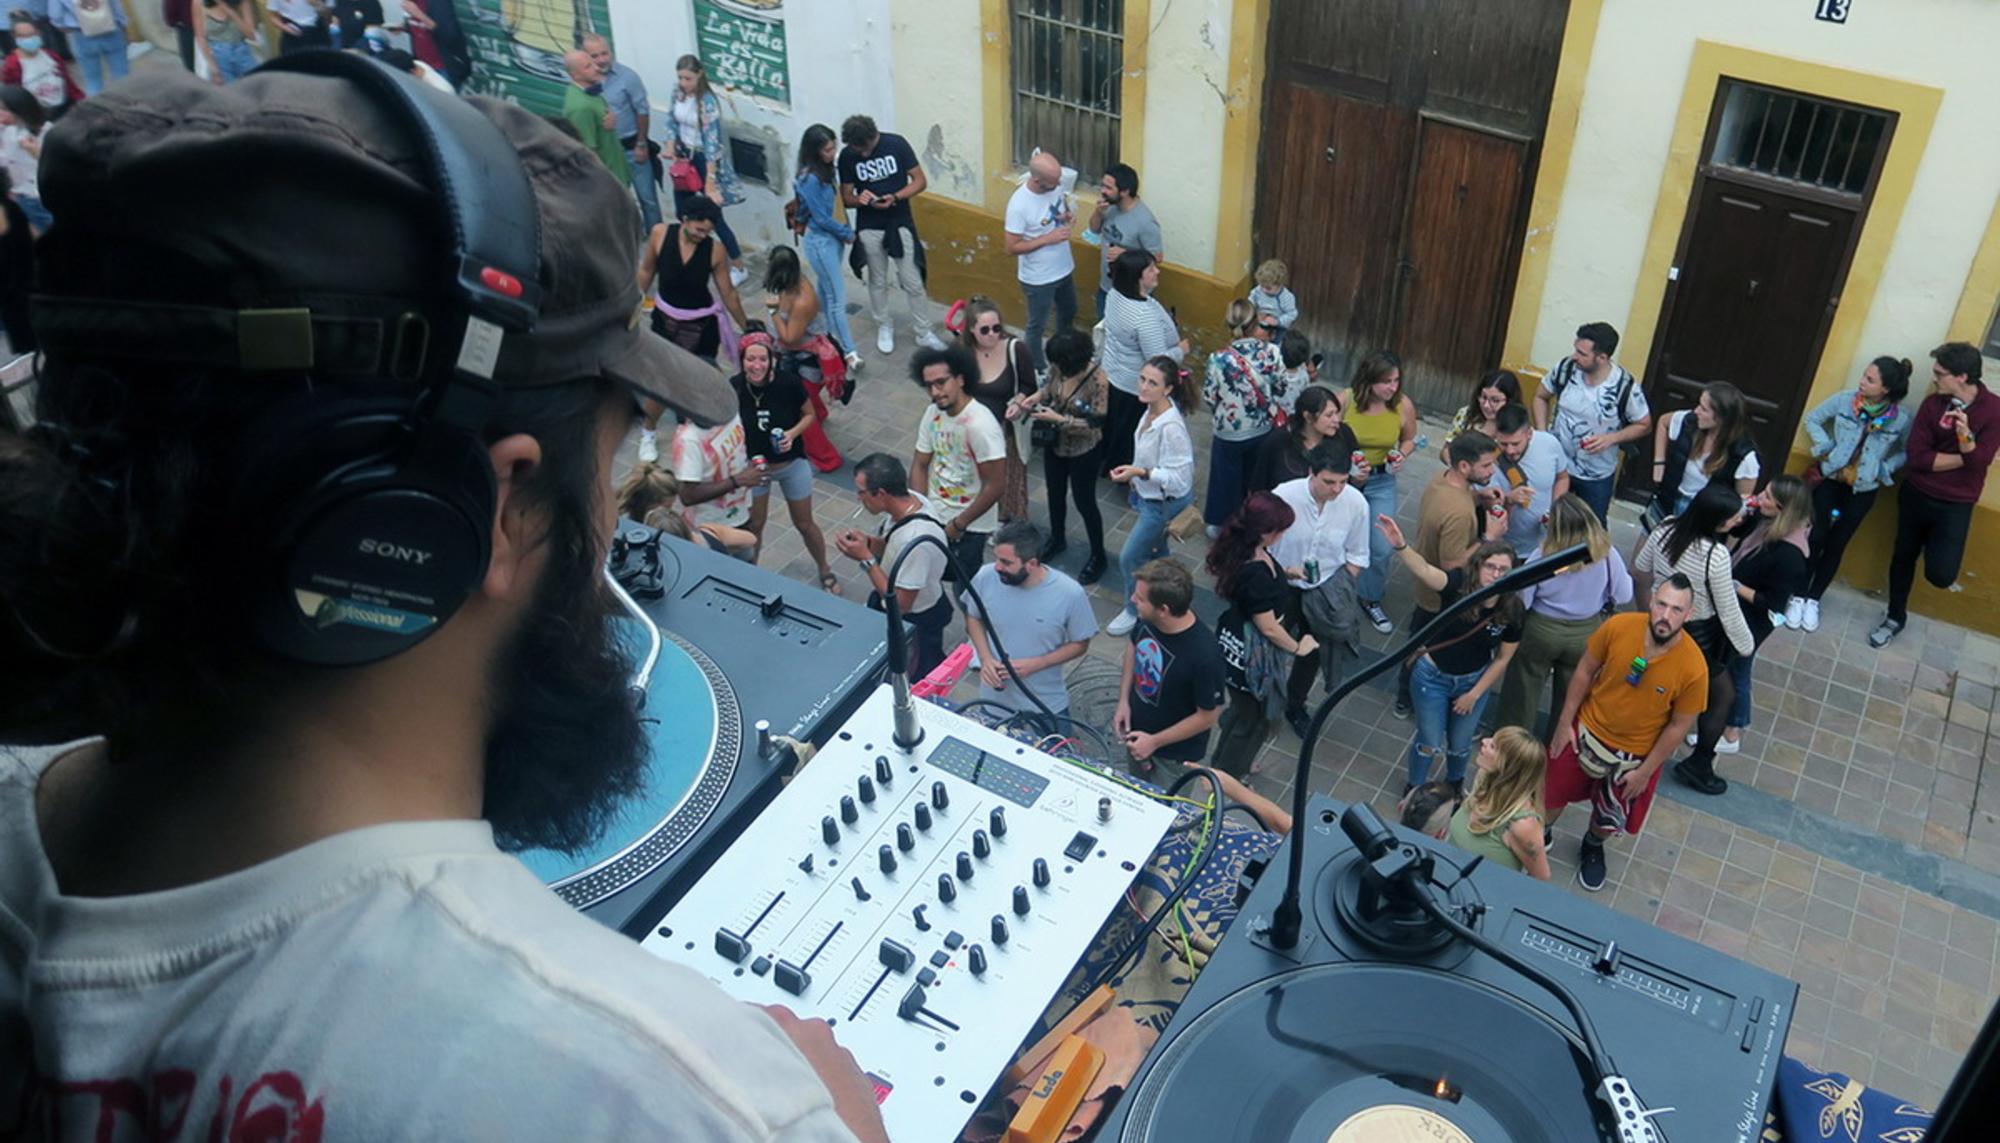 Festival ConFUSIÓN, arte y música en comunidad en el barrio valenciano de Benimaclet - 15